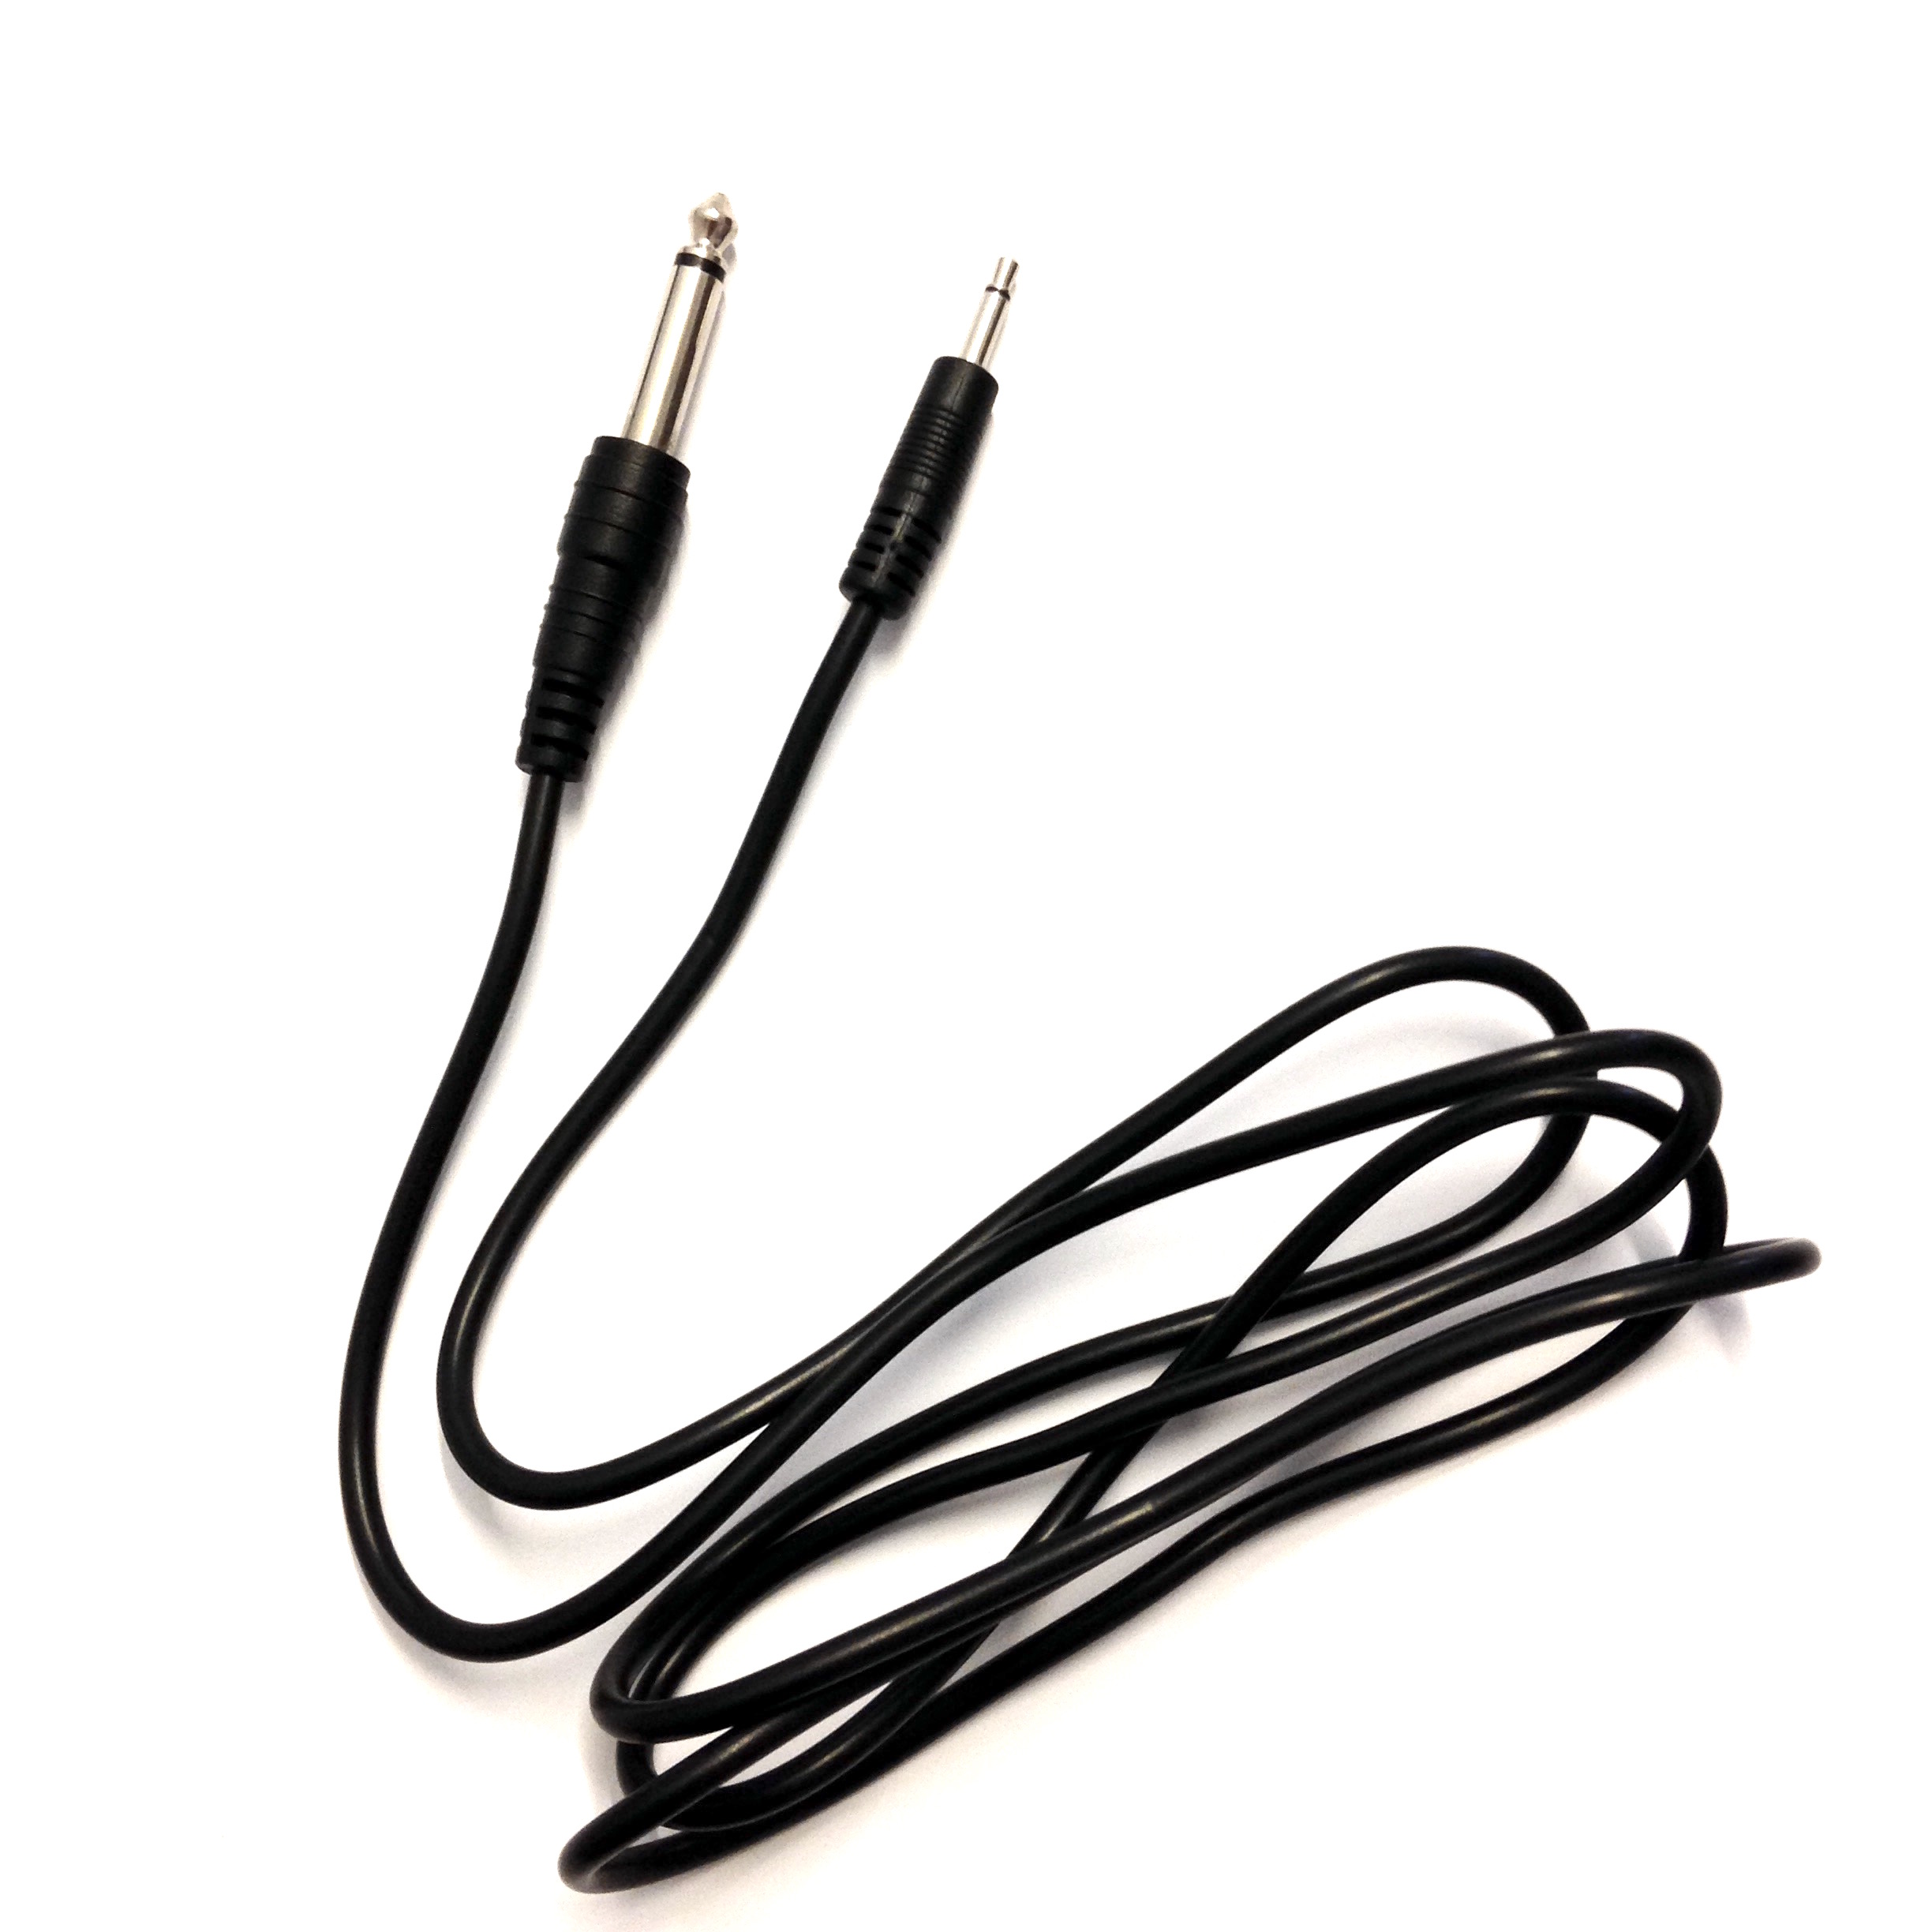 Mini-to-Big Jack Cable: 1.5m (Pack of 2) – KOMA Elektronik